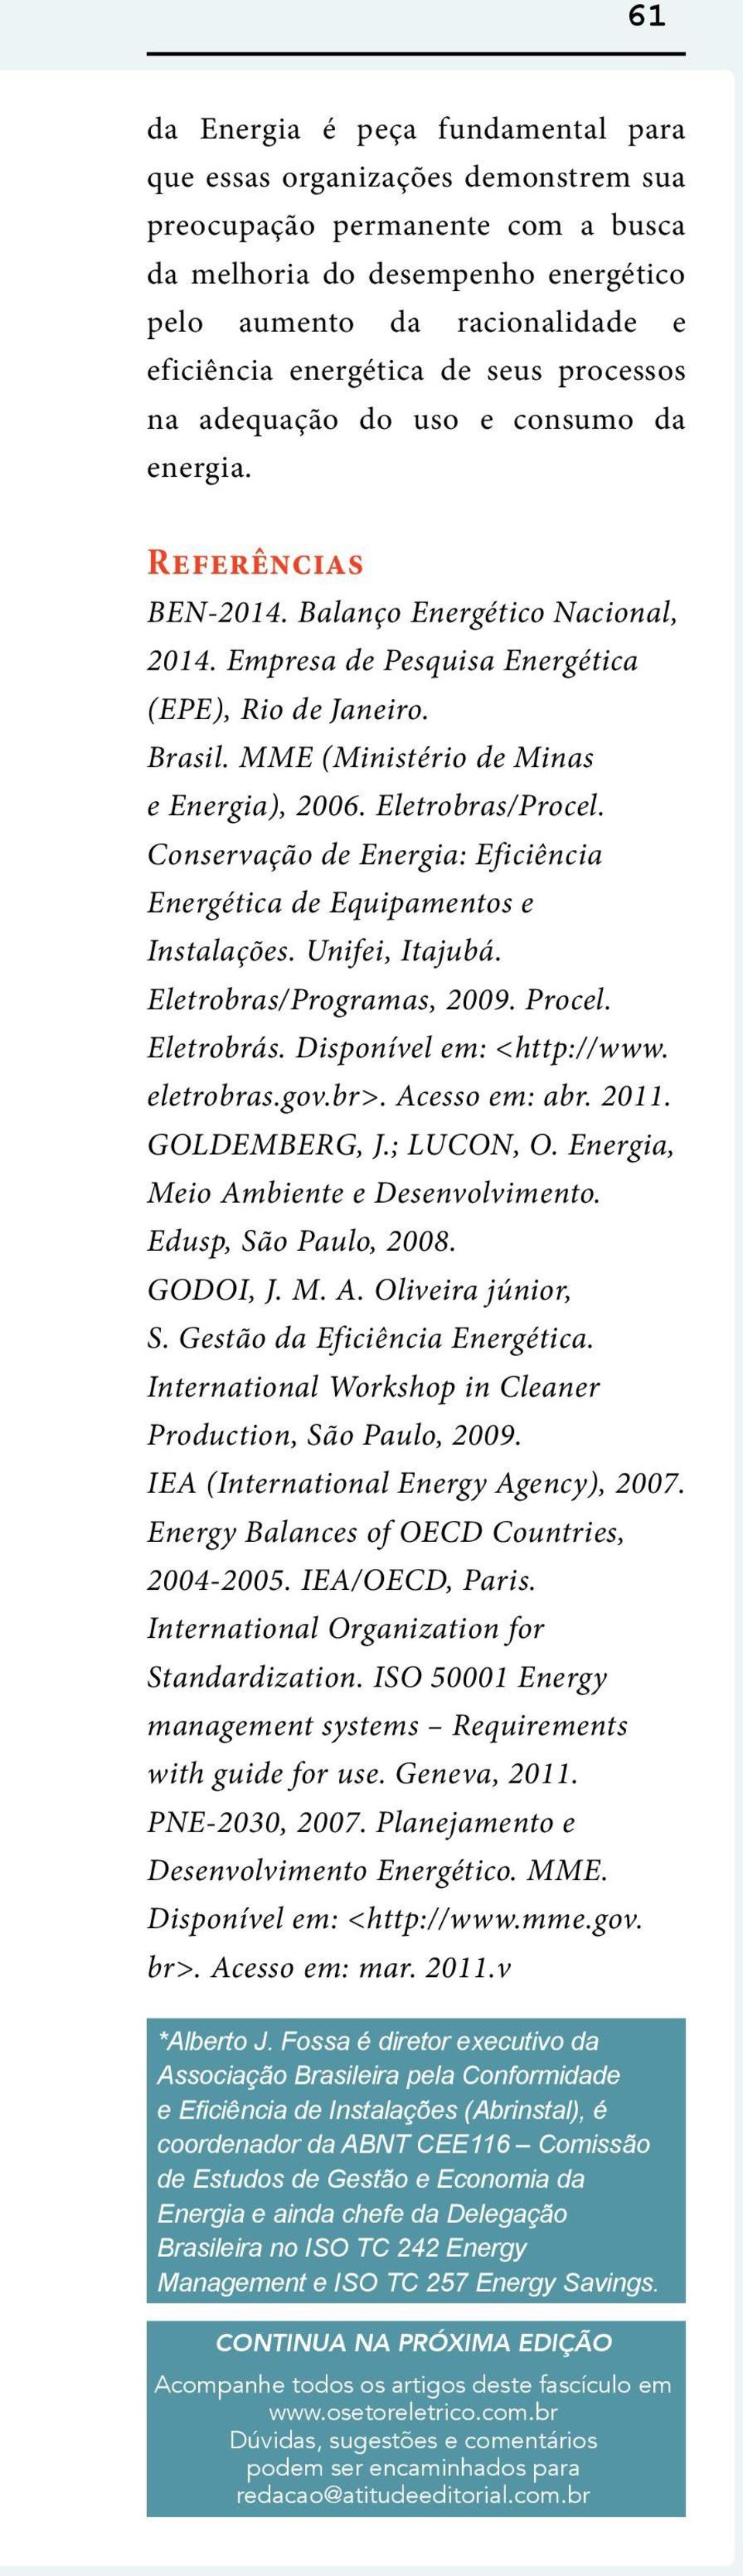 MME (Ministério de Minas e Energia), 2006. Eletrobras/Procel. Conservação de Energia: Eficiência Energética de Equipamentos e Instalações. Unifei, Itajubá. Eletrobras/Programas, 2009. Procel.